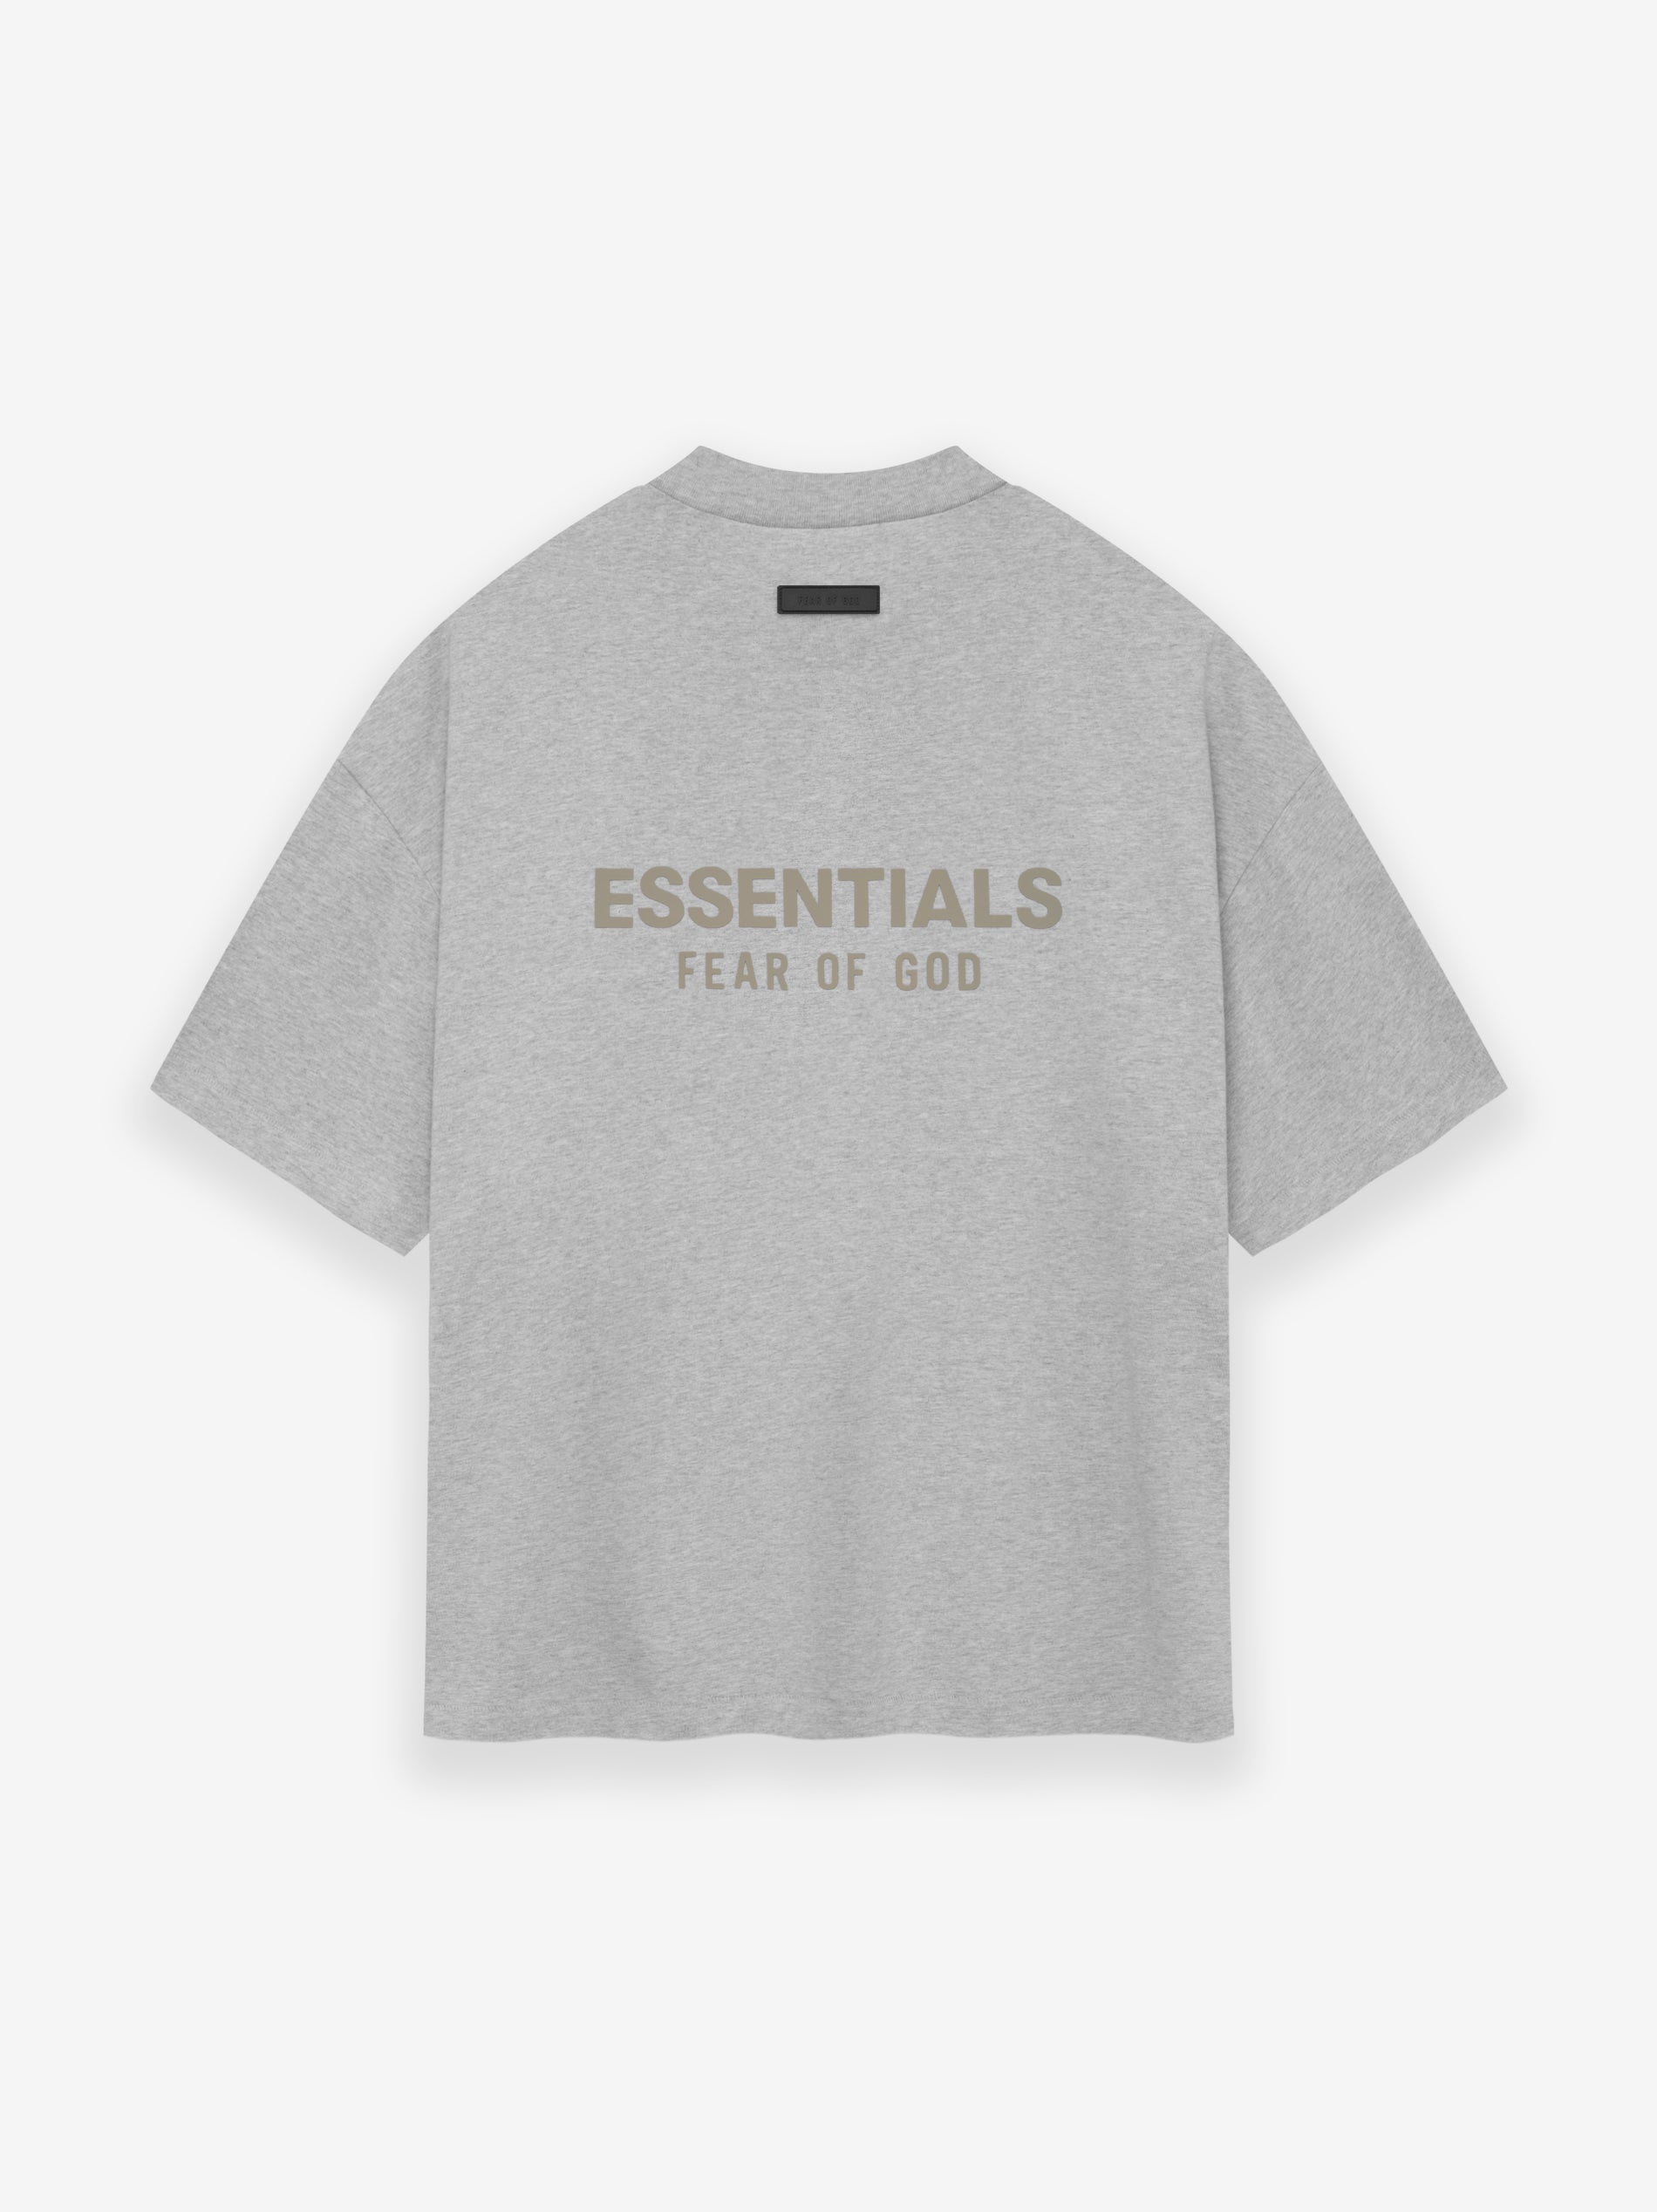 Fear of God Essentials T Shirt Light Grey Heather Grey – The Luxury Shopper